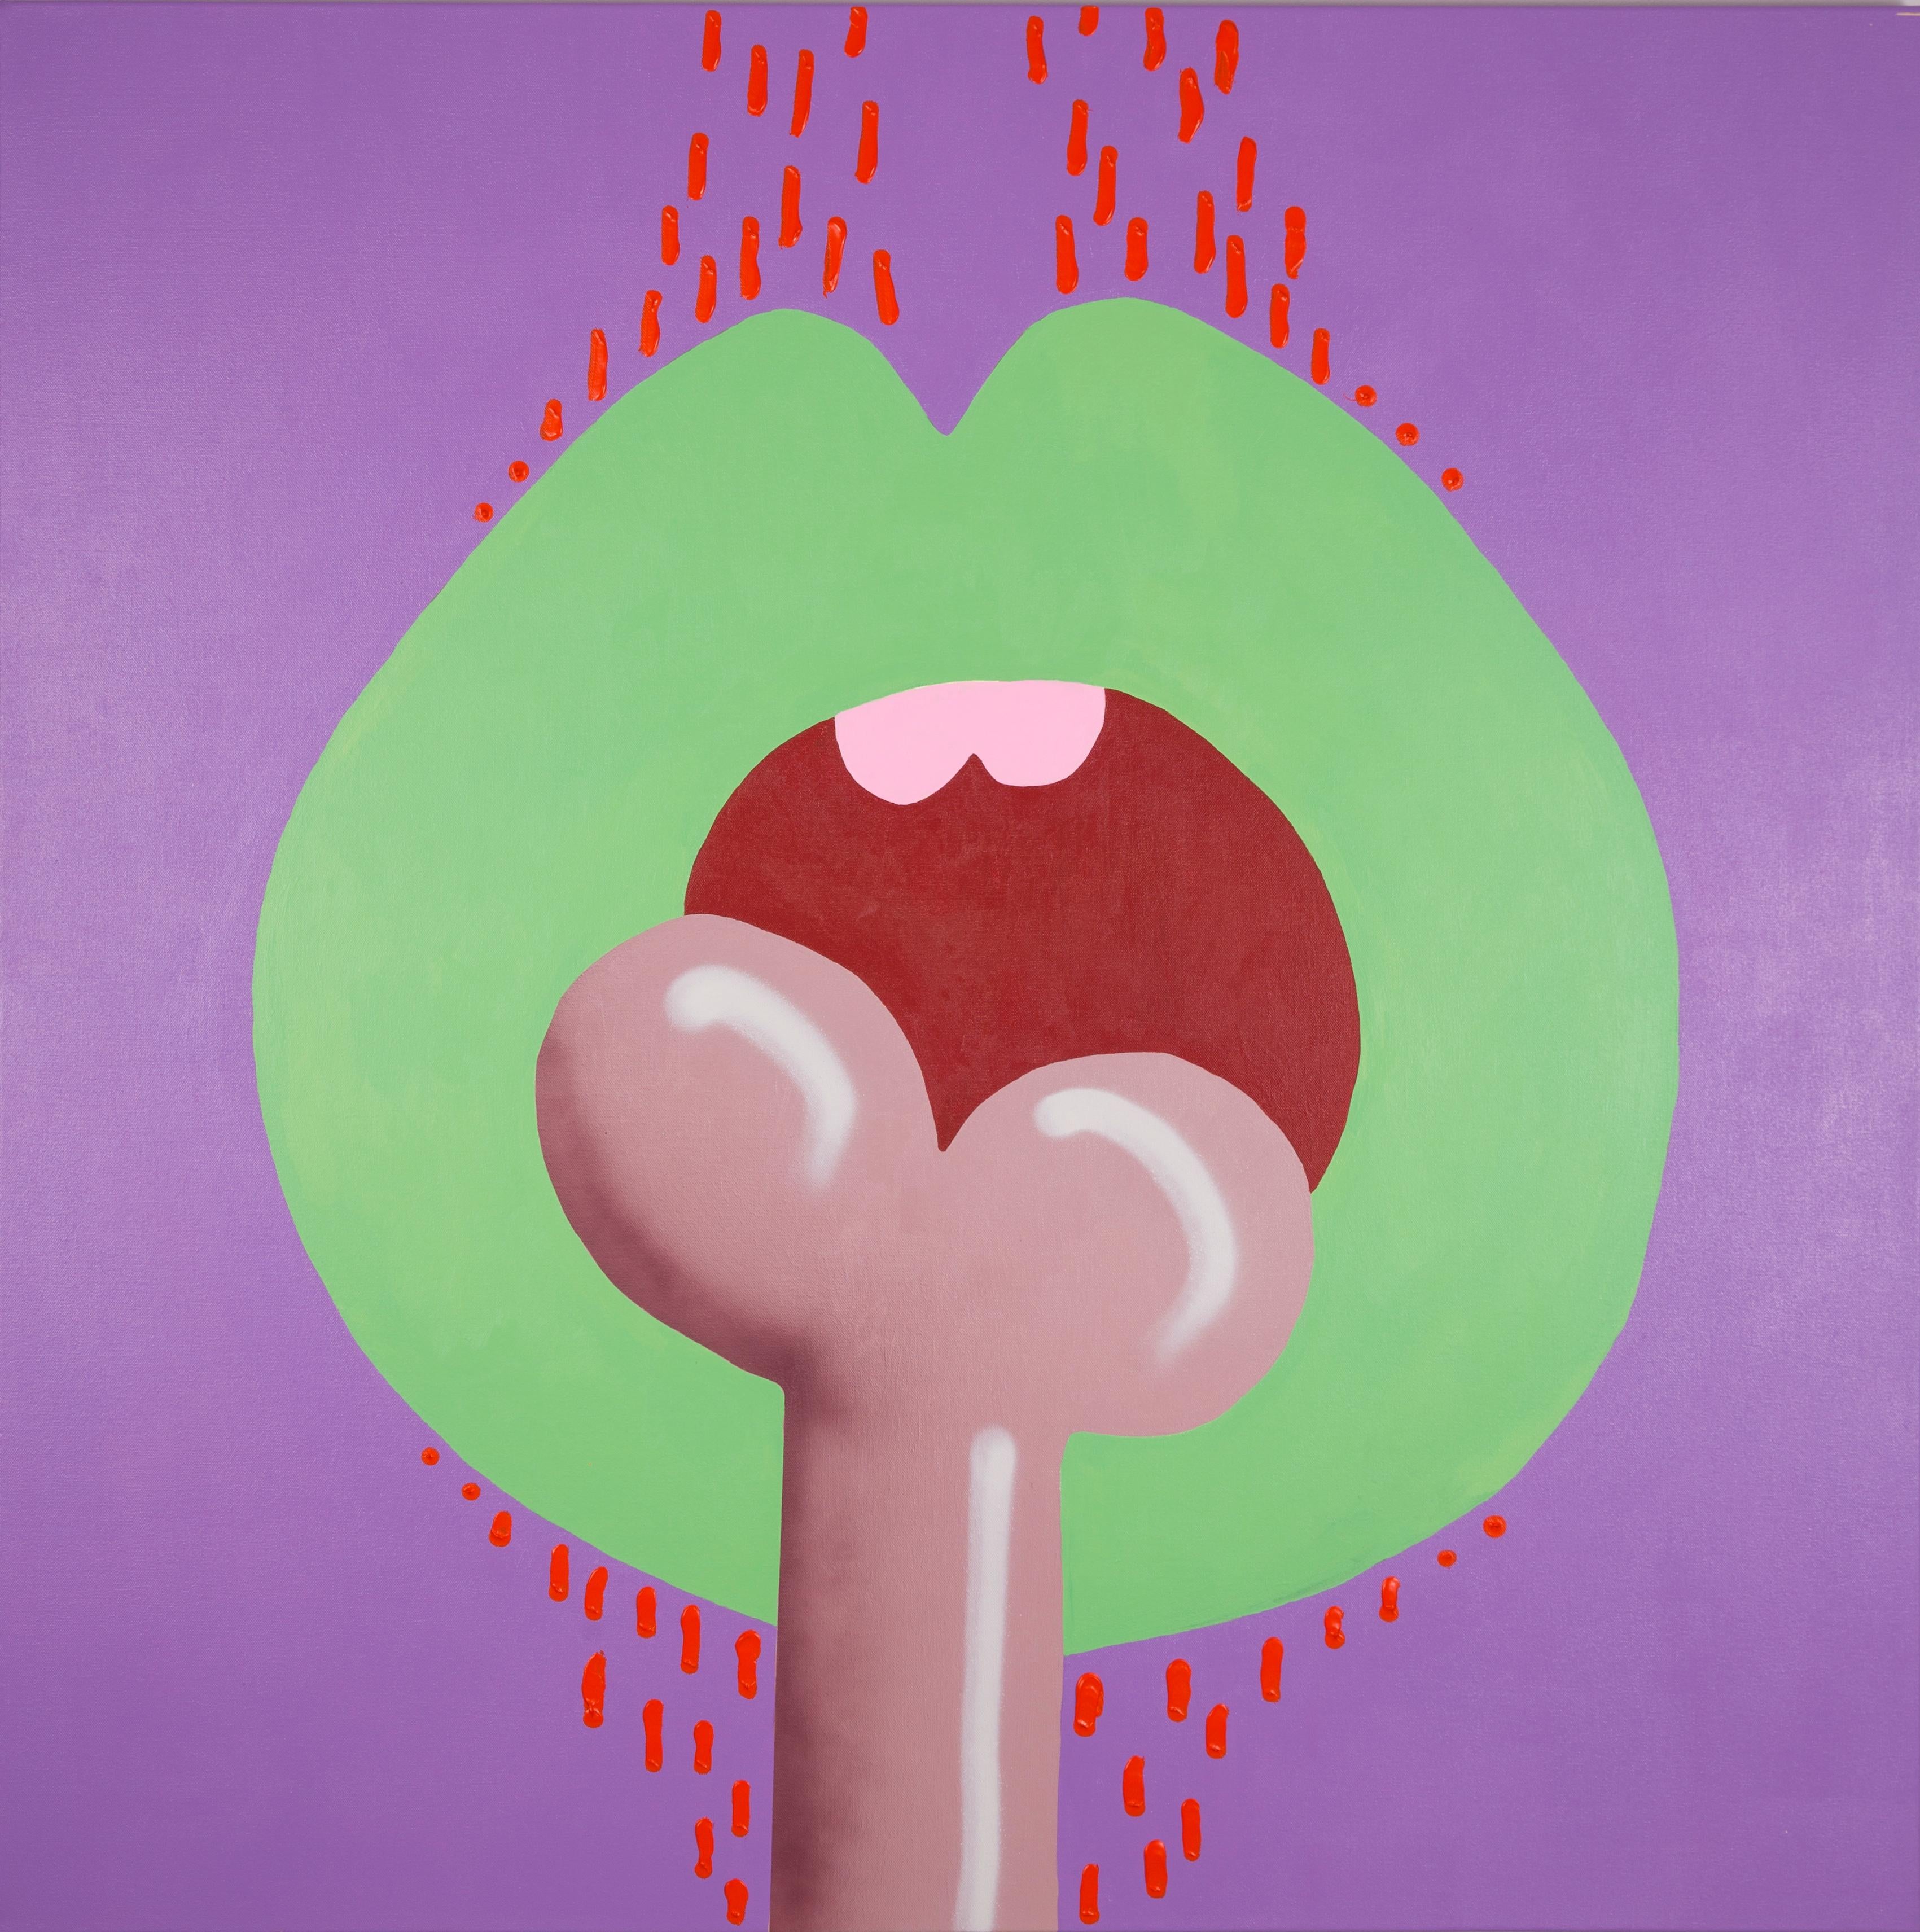 BONE - Pop-Art- Illustratives Gemälde von Lippen und Knochen, grün, lila, rot 